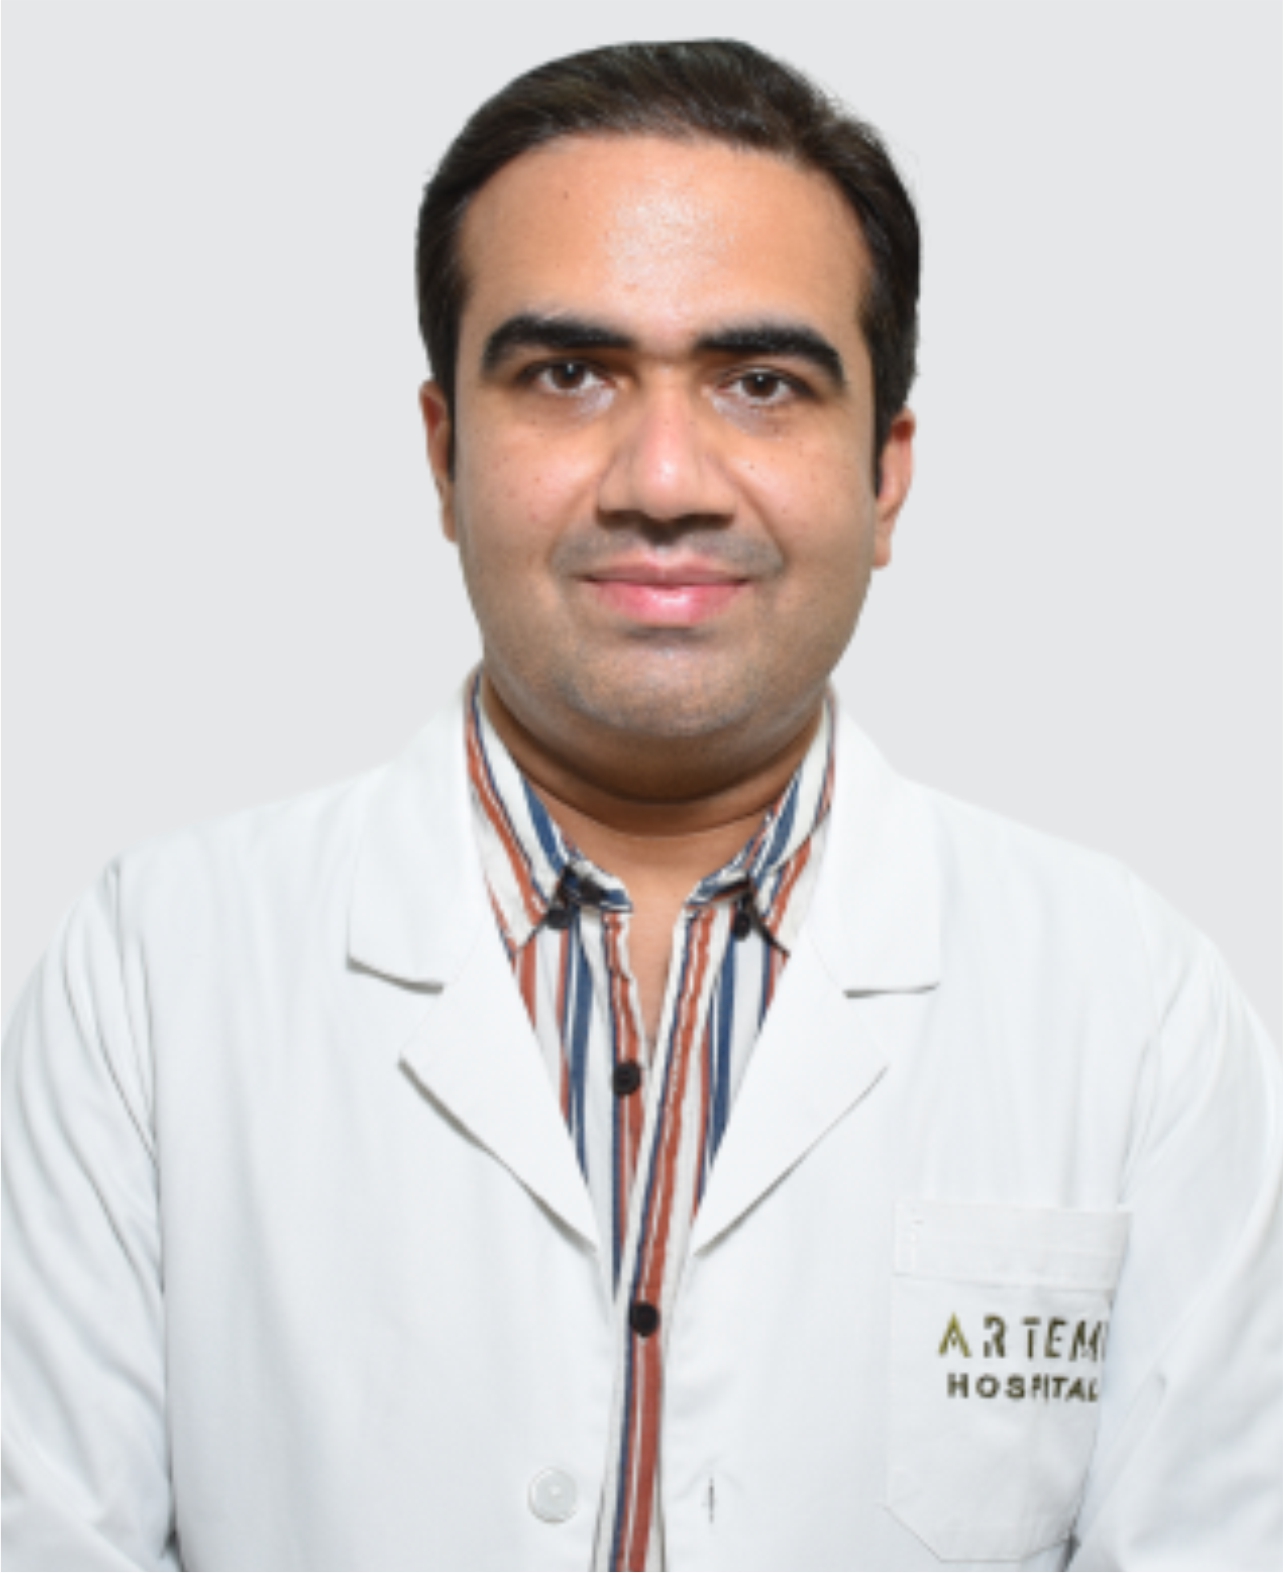 Dr. Deepak Solanki